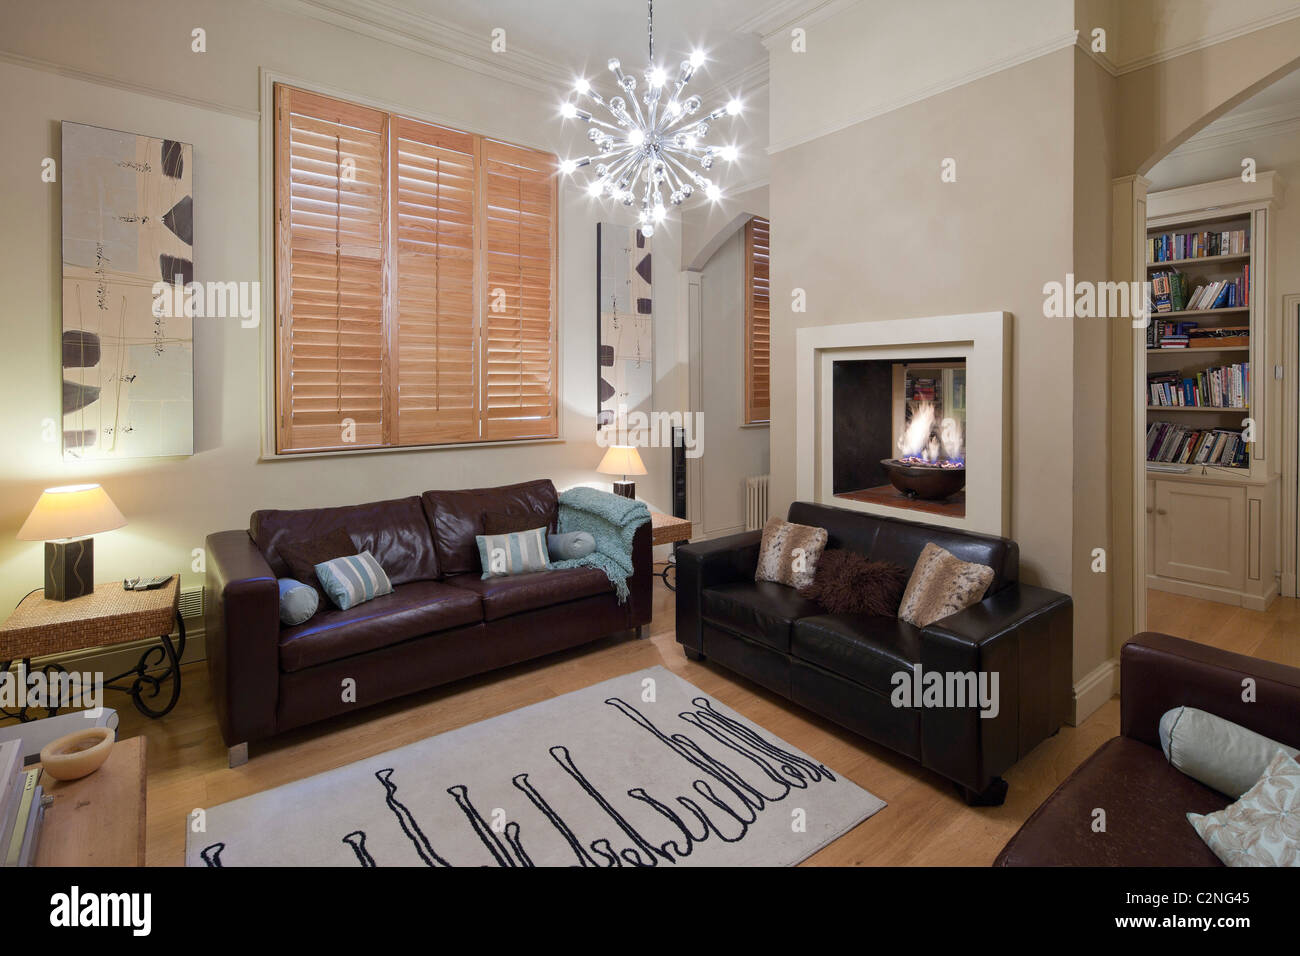 Famiglia di folle in salotto con pavimento in legno e persiane di legno e divani in pelle Foto Stock